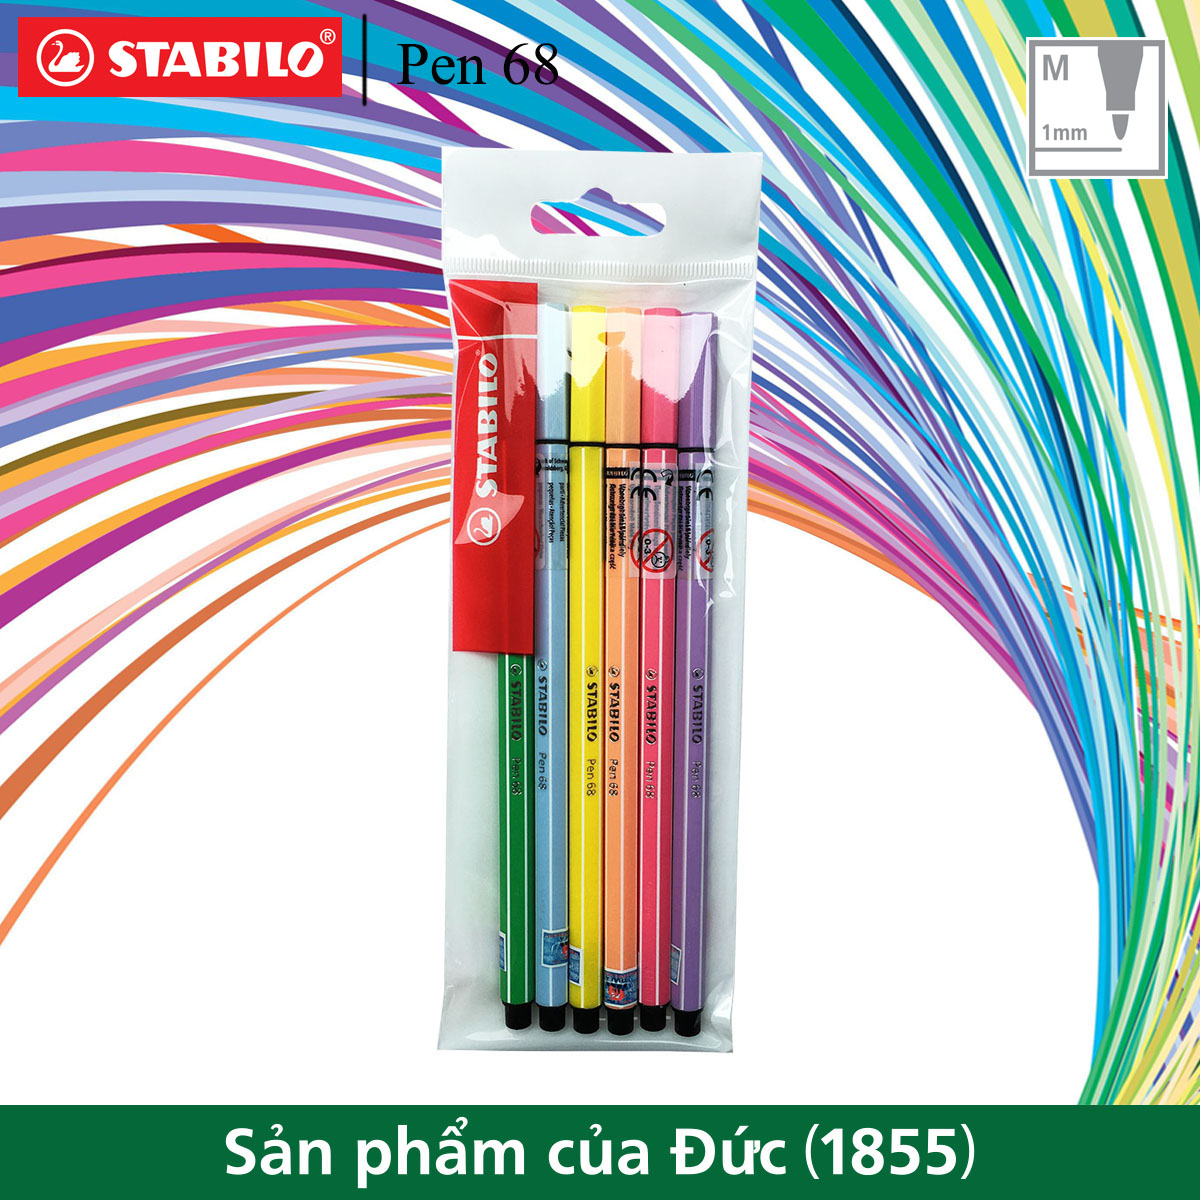 Bộ 6 Bút lông màu STABILO Pen68 1.0mm